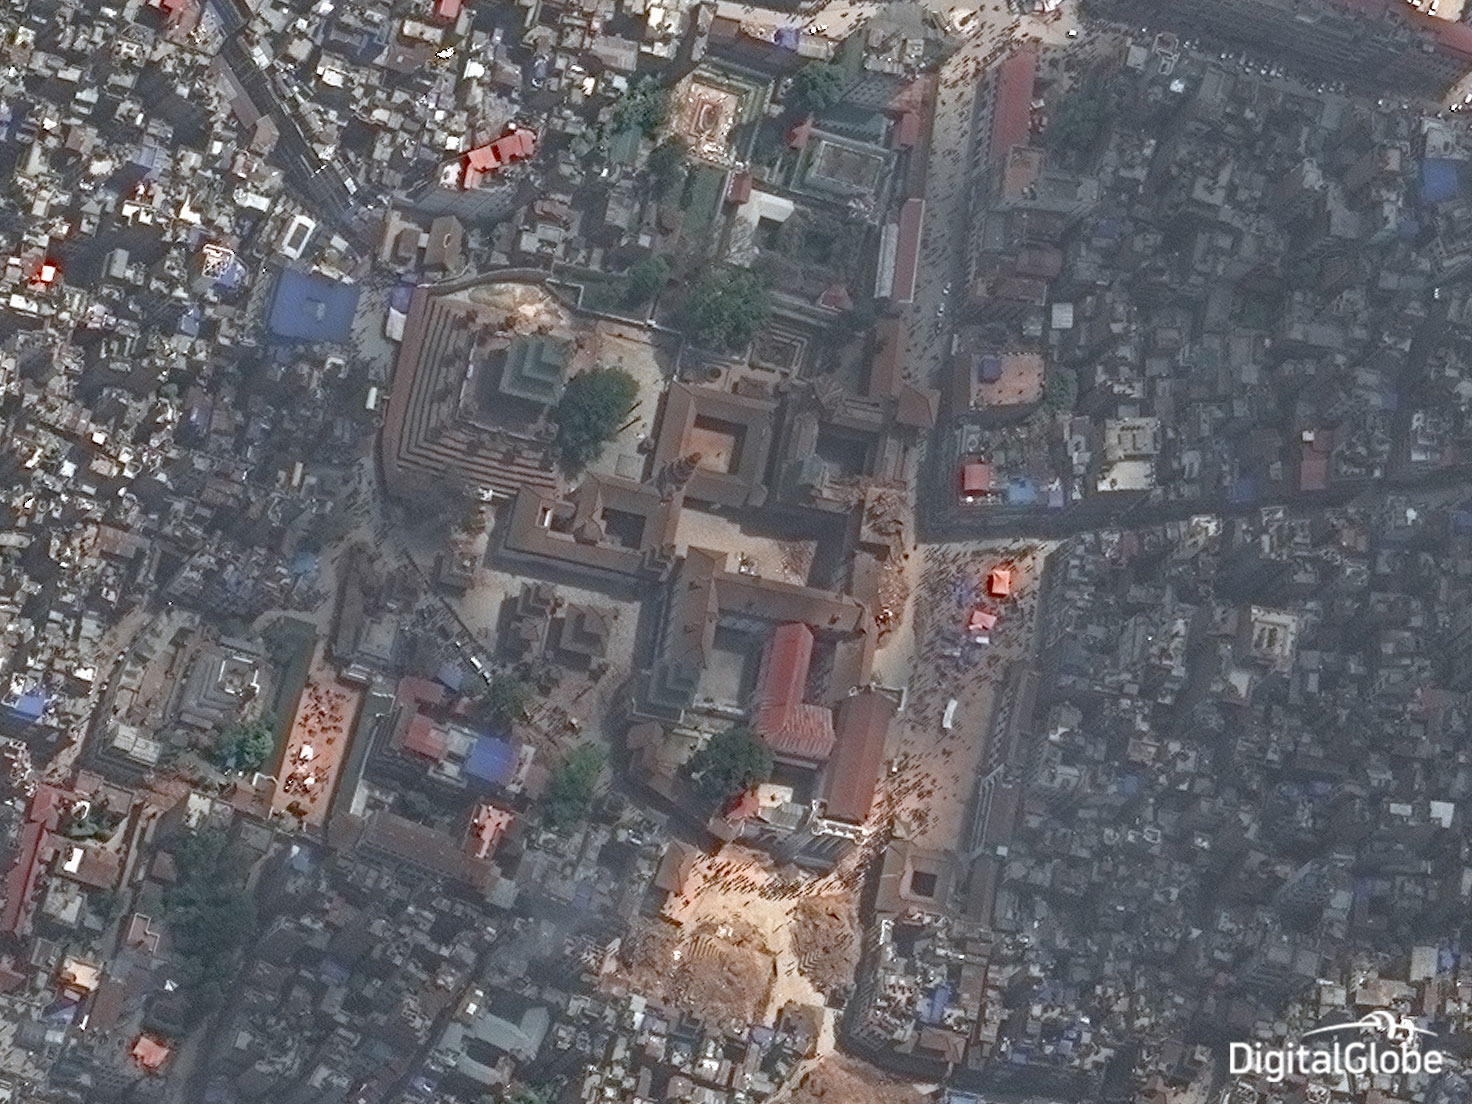 The Vatsala Durga temple in Bhaktapur on April 27, 2015.